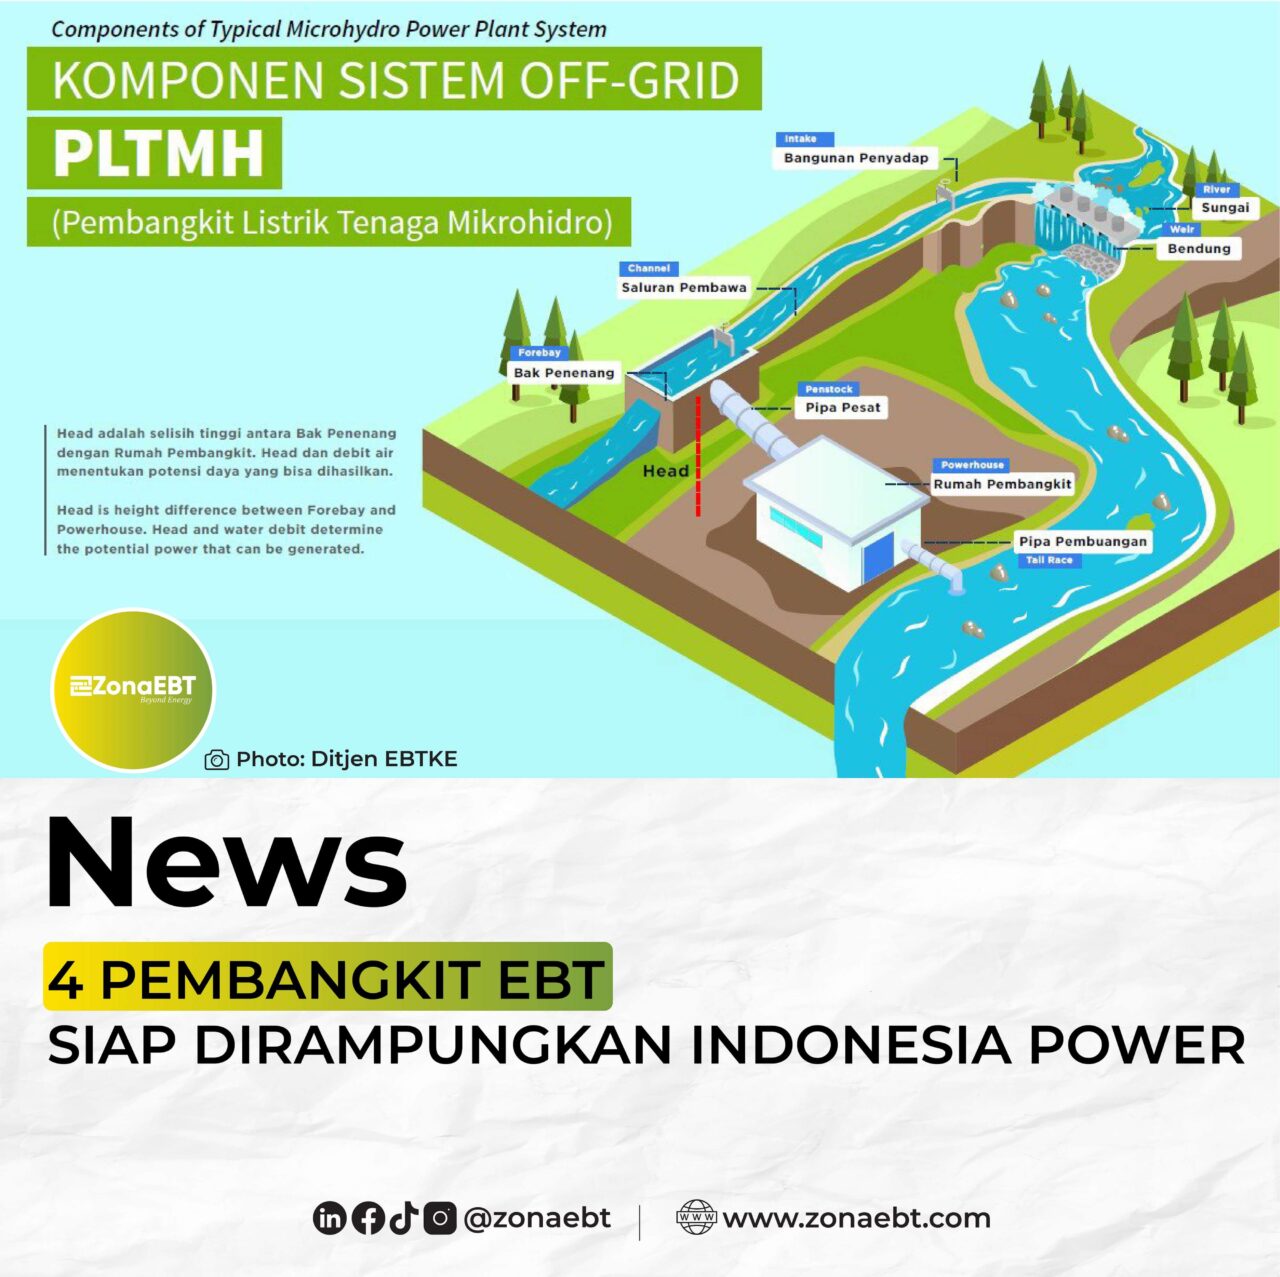 4 PEMBANGKIT EBT SIAP DIRAMPUNGKAN INDONESIA POWER